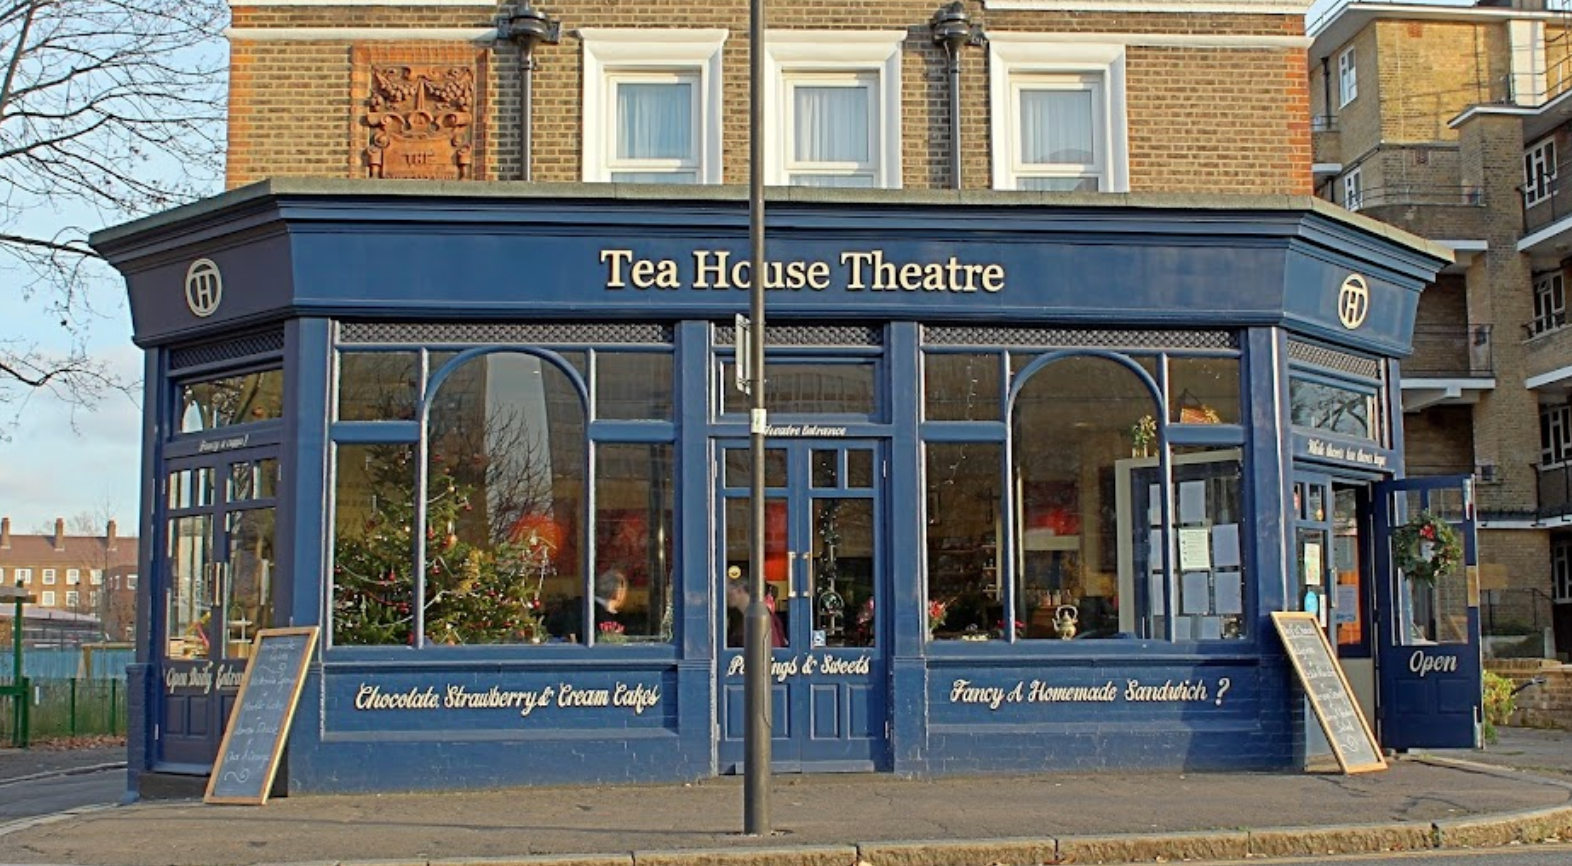 Tea House Theatre